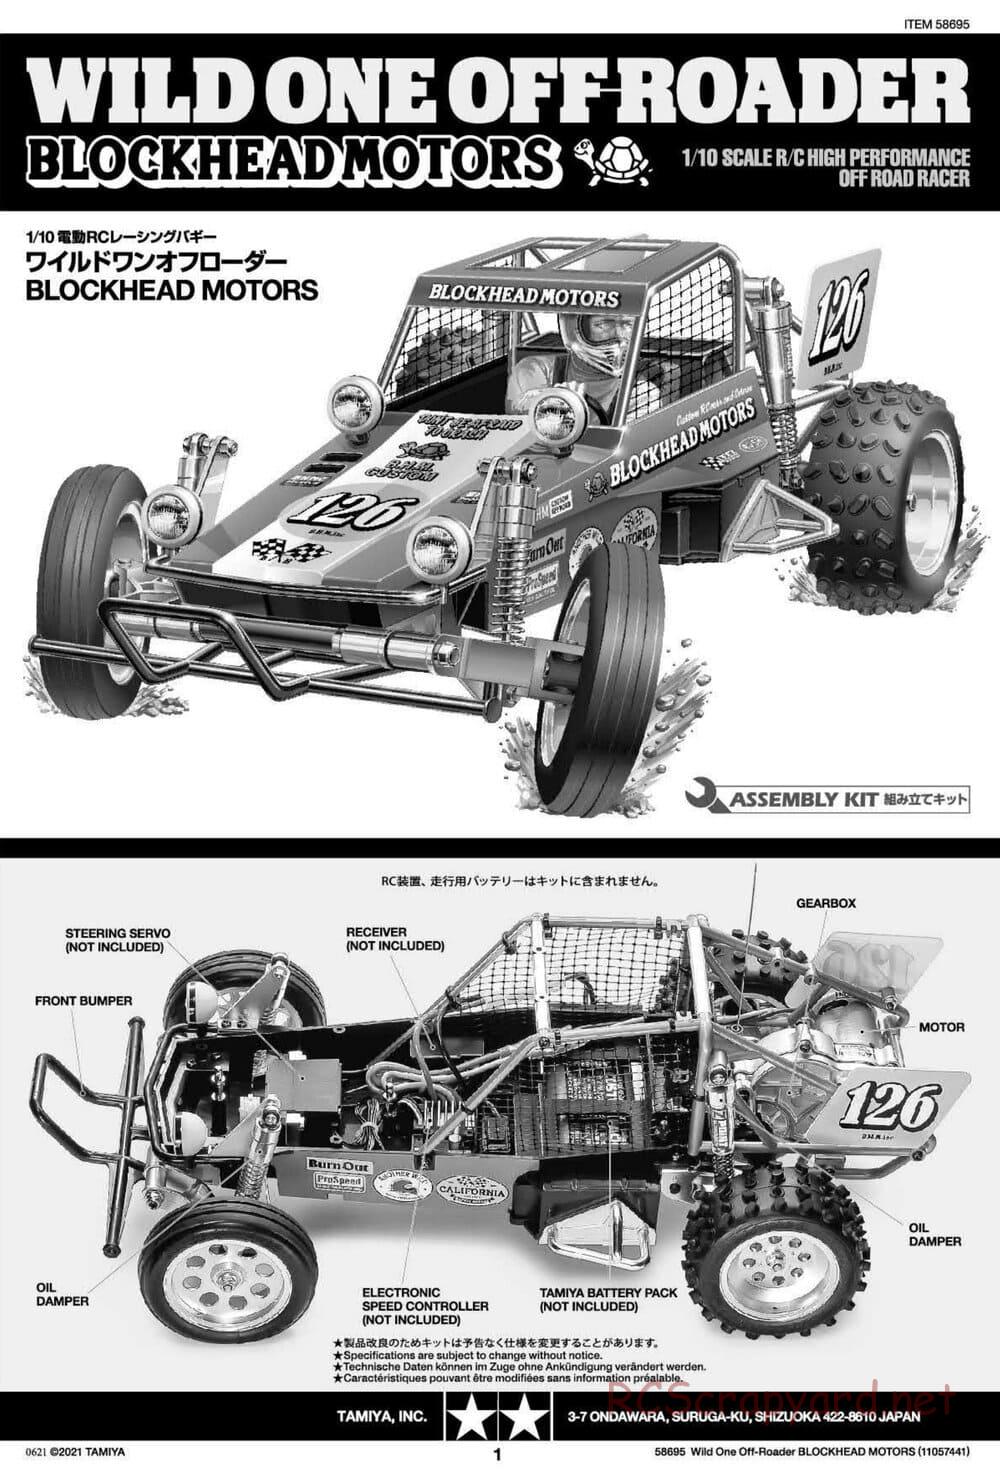 Tamiya - Wild One Off Roader Blockhead Motors - FAV Chassis - Manual - Page 1